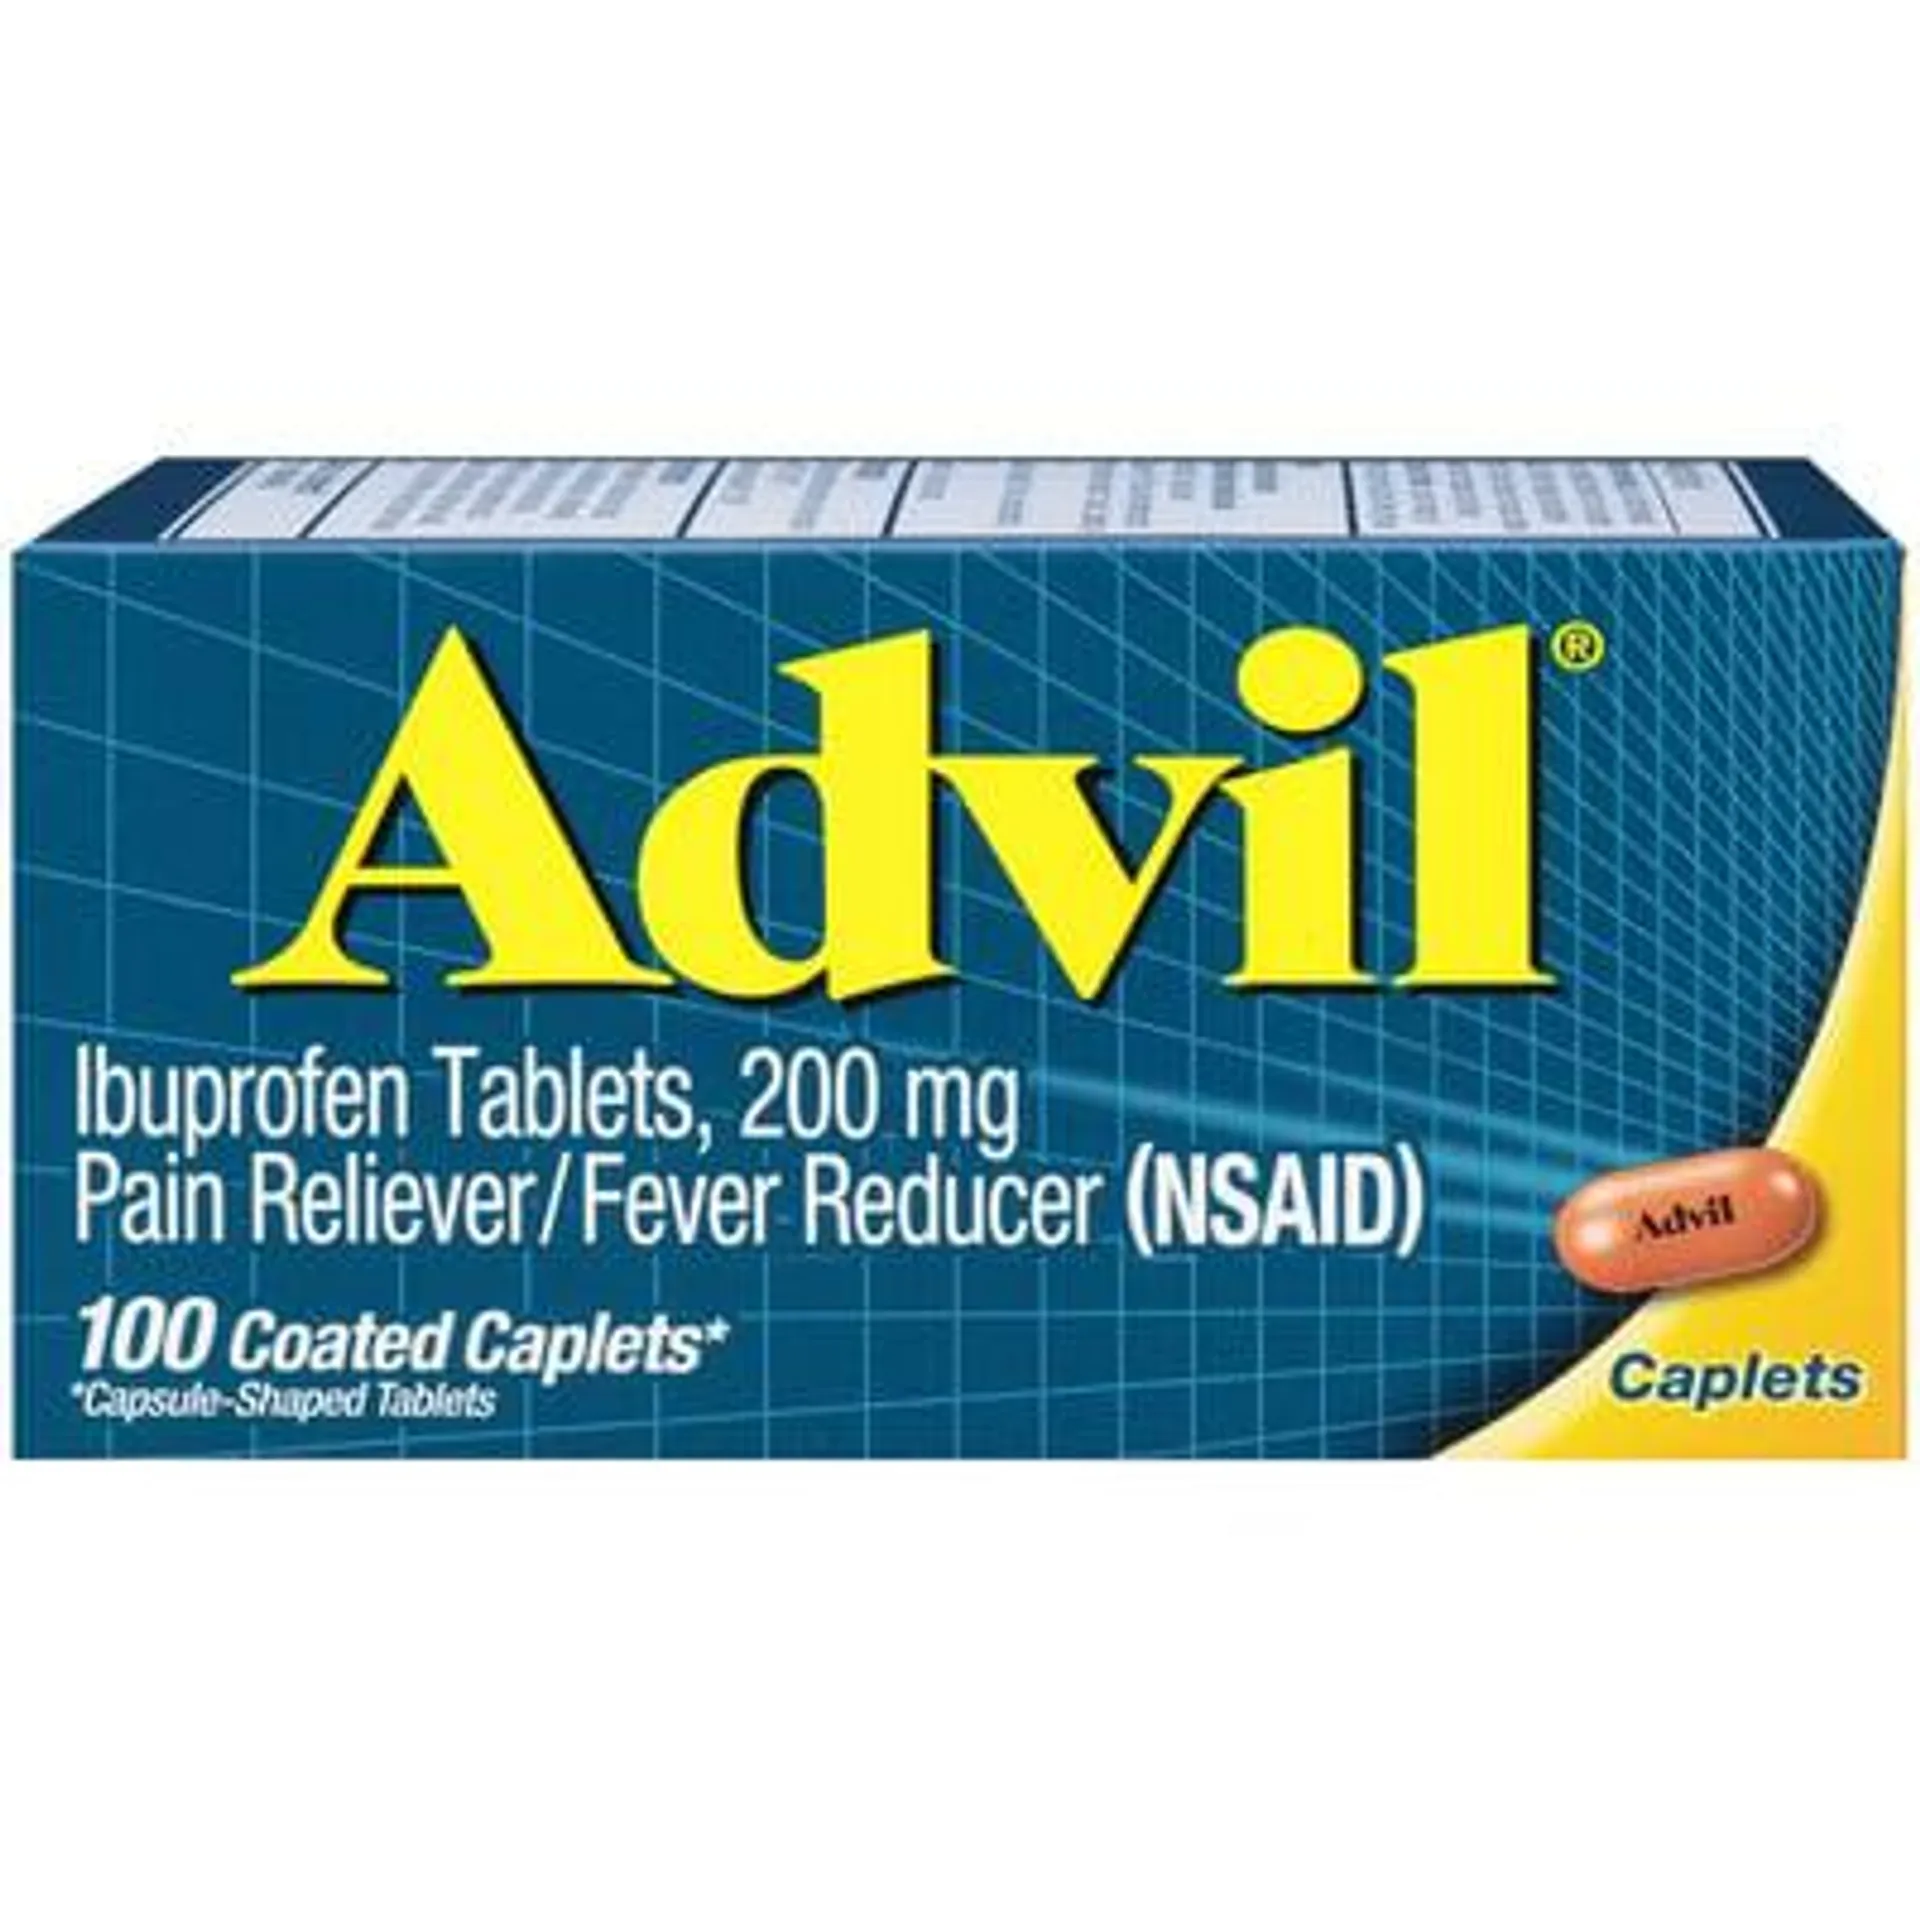 Advil, Ibuprofen, 200 mg, Coated Caplets